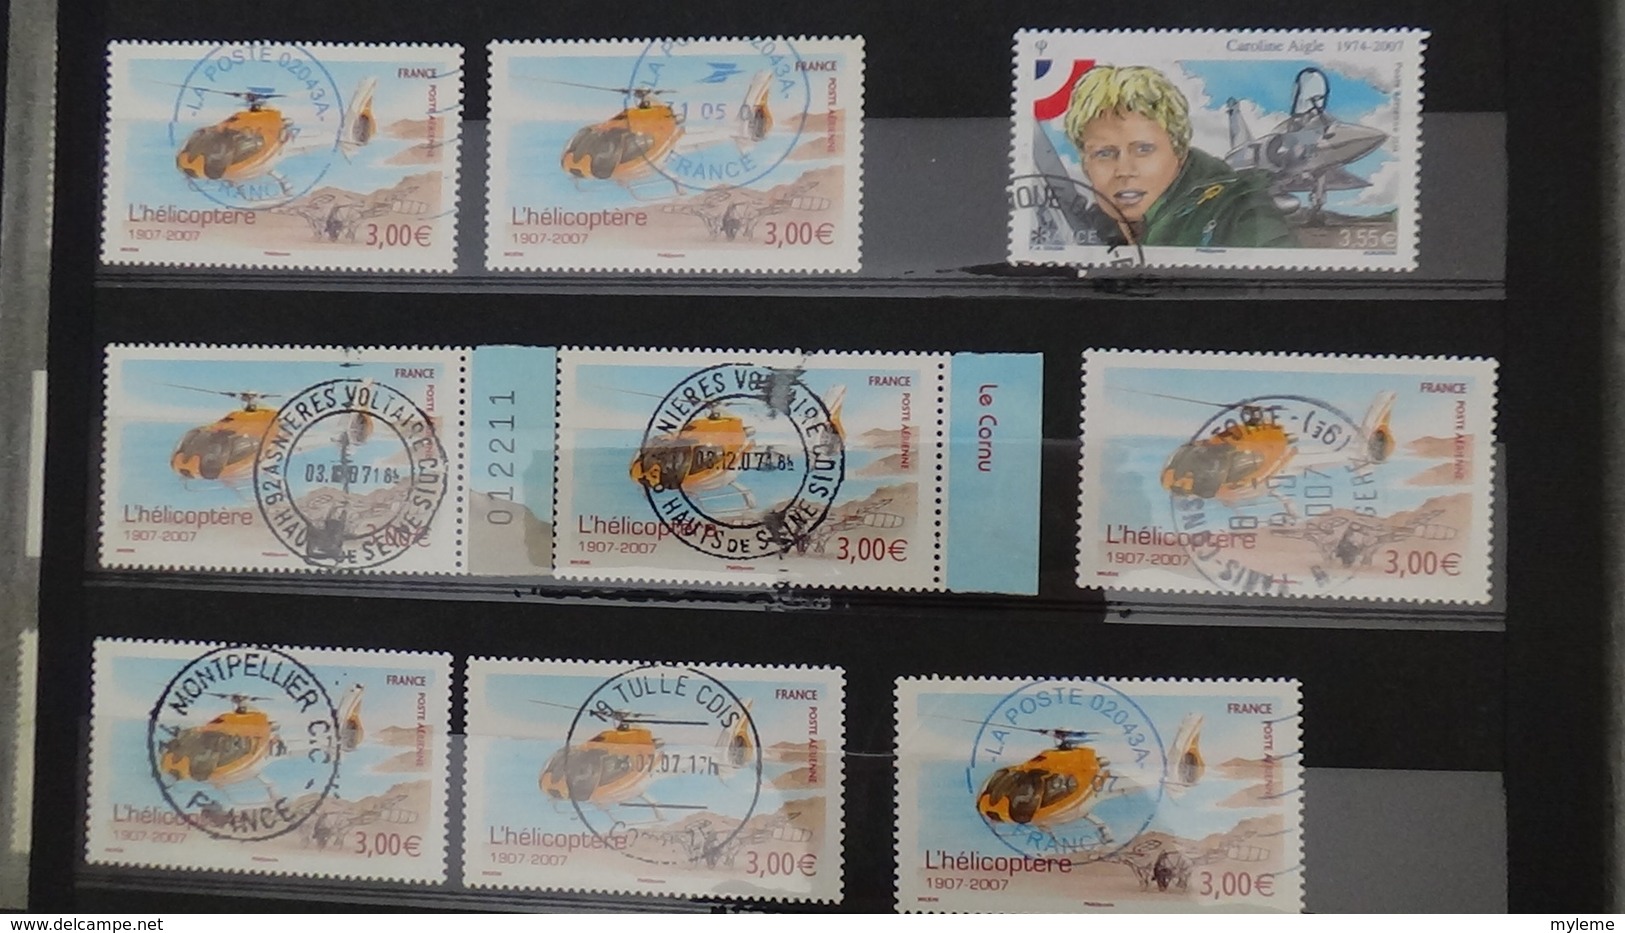 B422 Mini stock de timbres de France oblitérésPA dont 1ère plaquette **  (côte seule 380 euros) Très sympa !!!